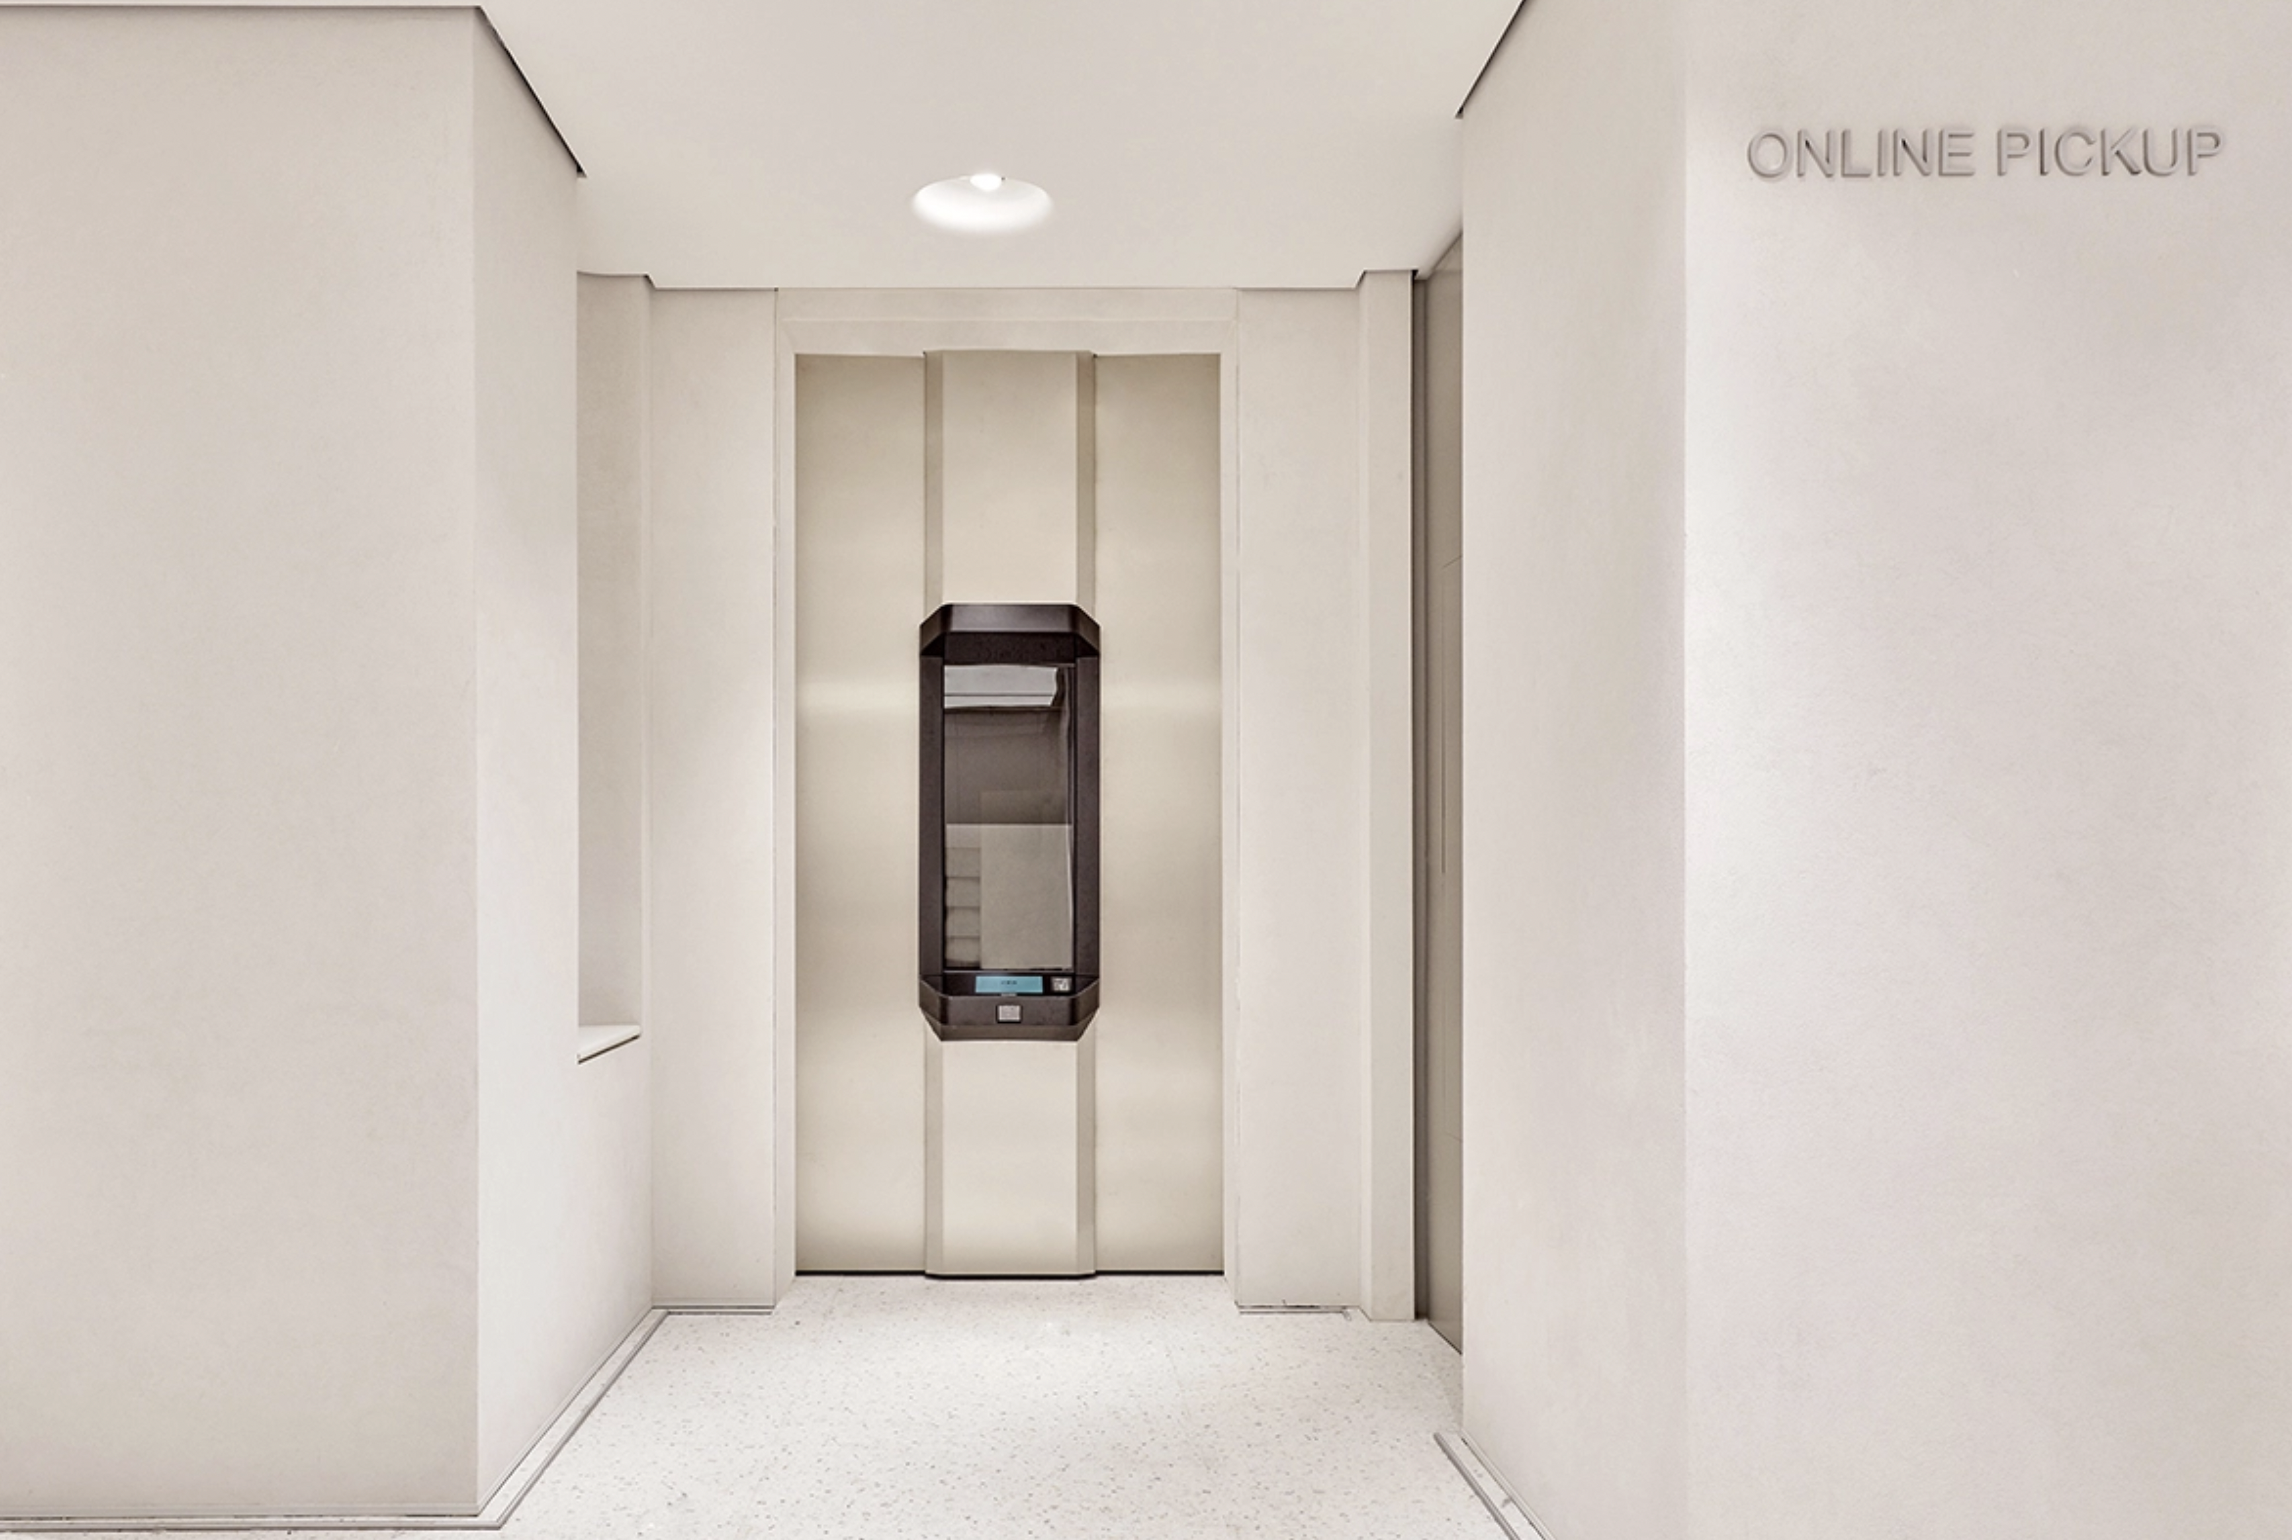 옴니채널을 활용한 가장 진보된 리테일 경험디자인: Zara Battersea 런던 플래그쉽